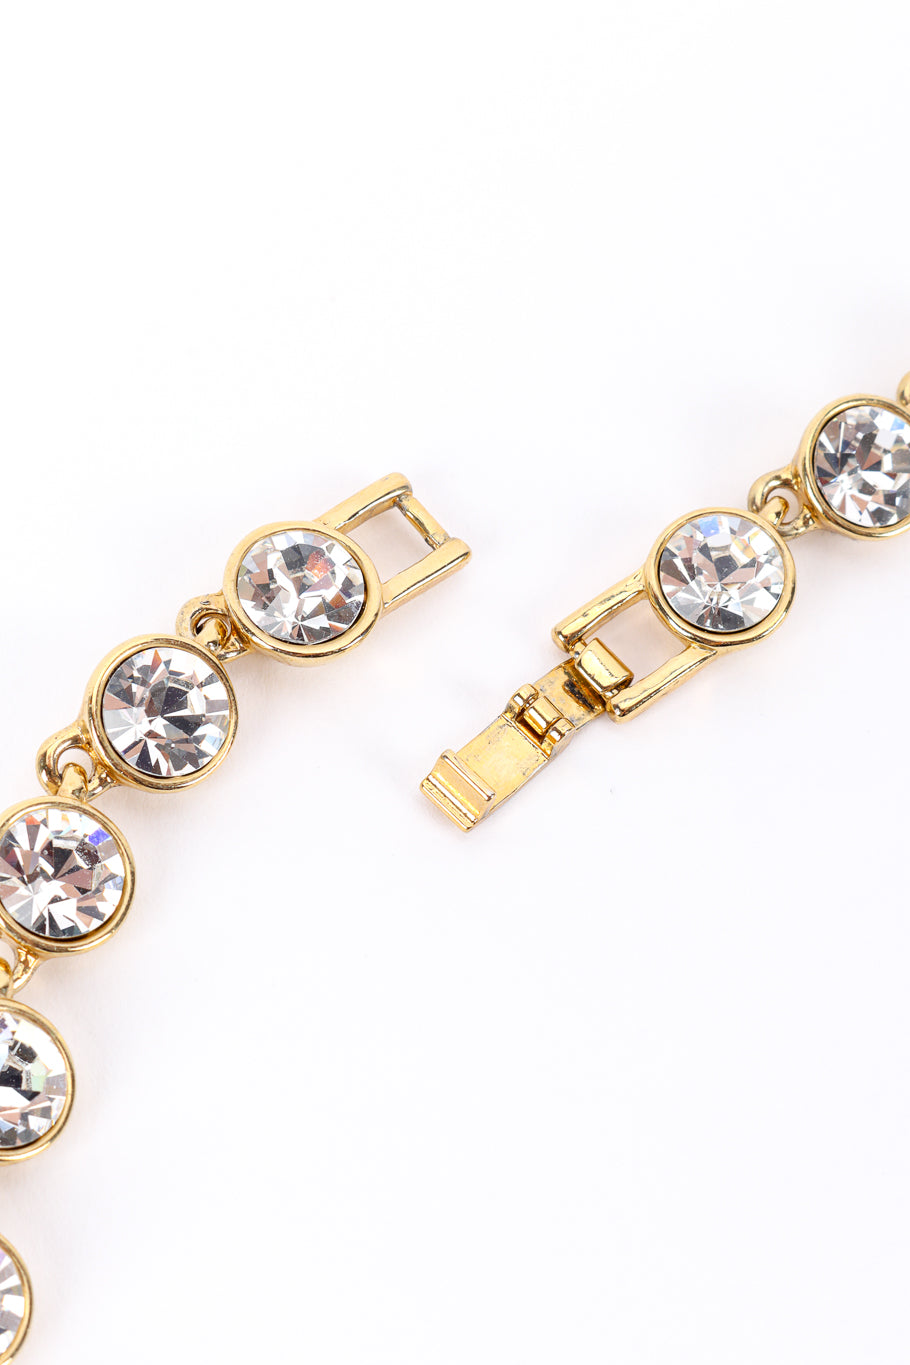 Vintage Givenchy Crystal Link Necklace tab closure unclasped @recessla